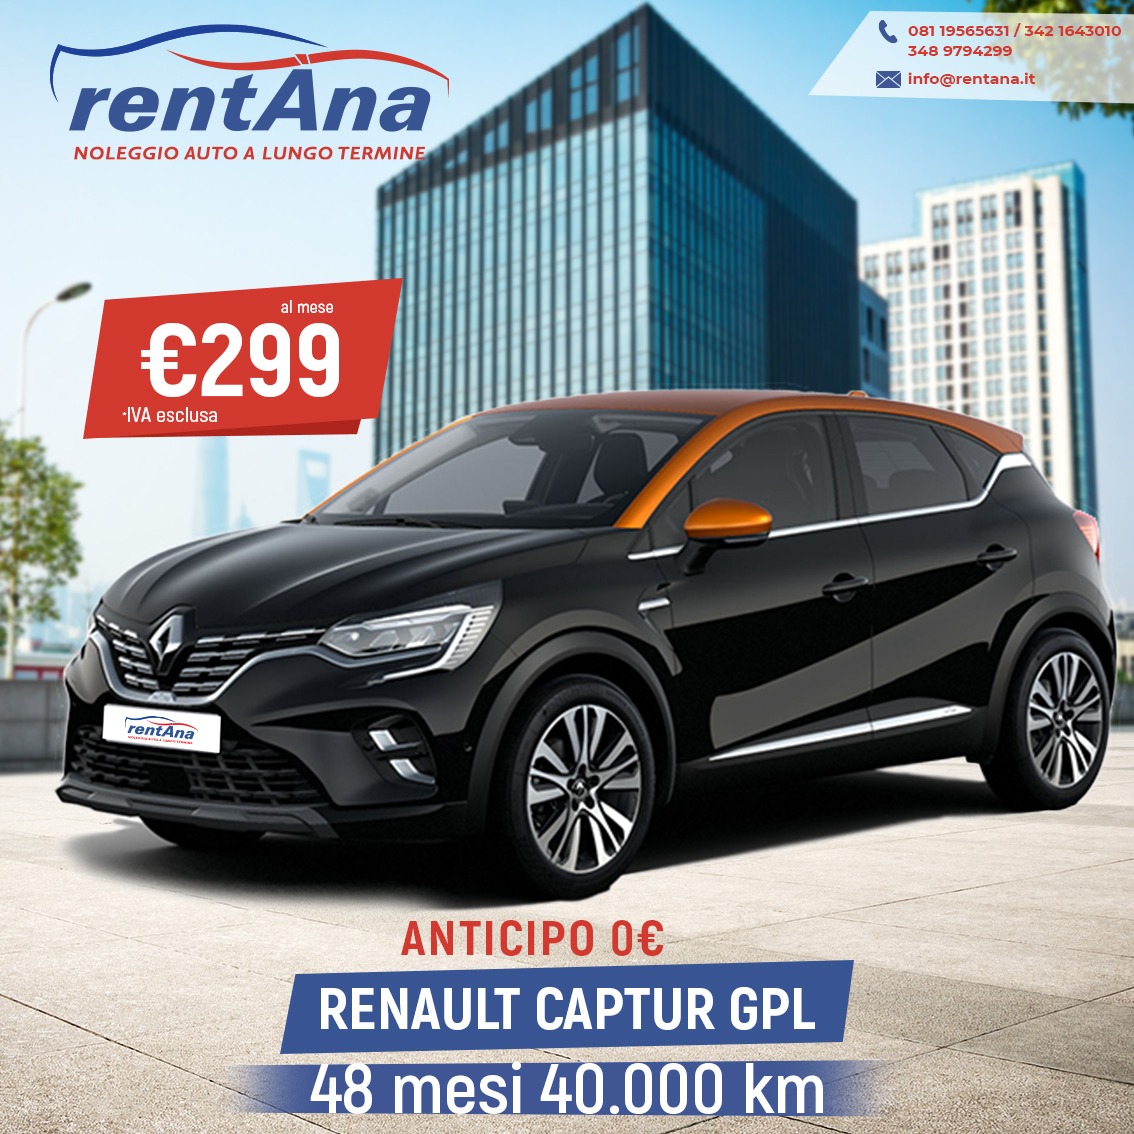 Renault Capture GPL